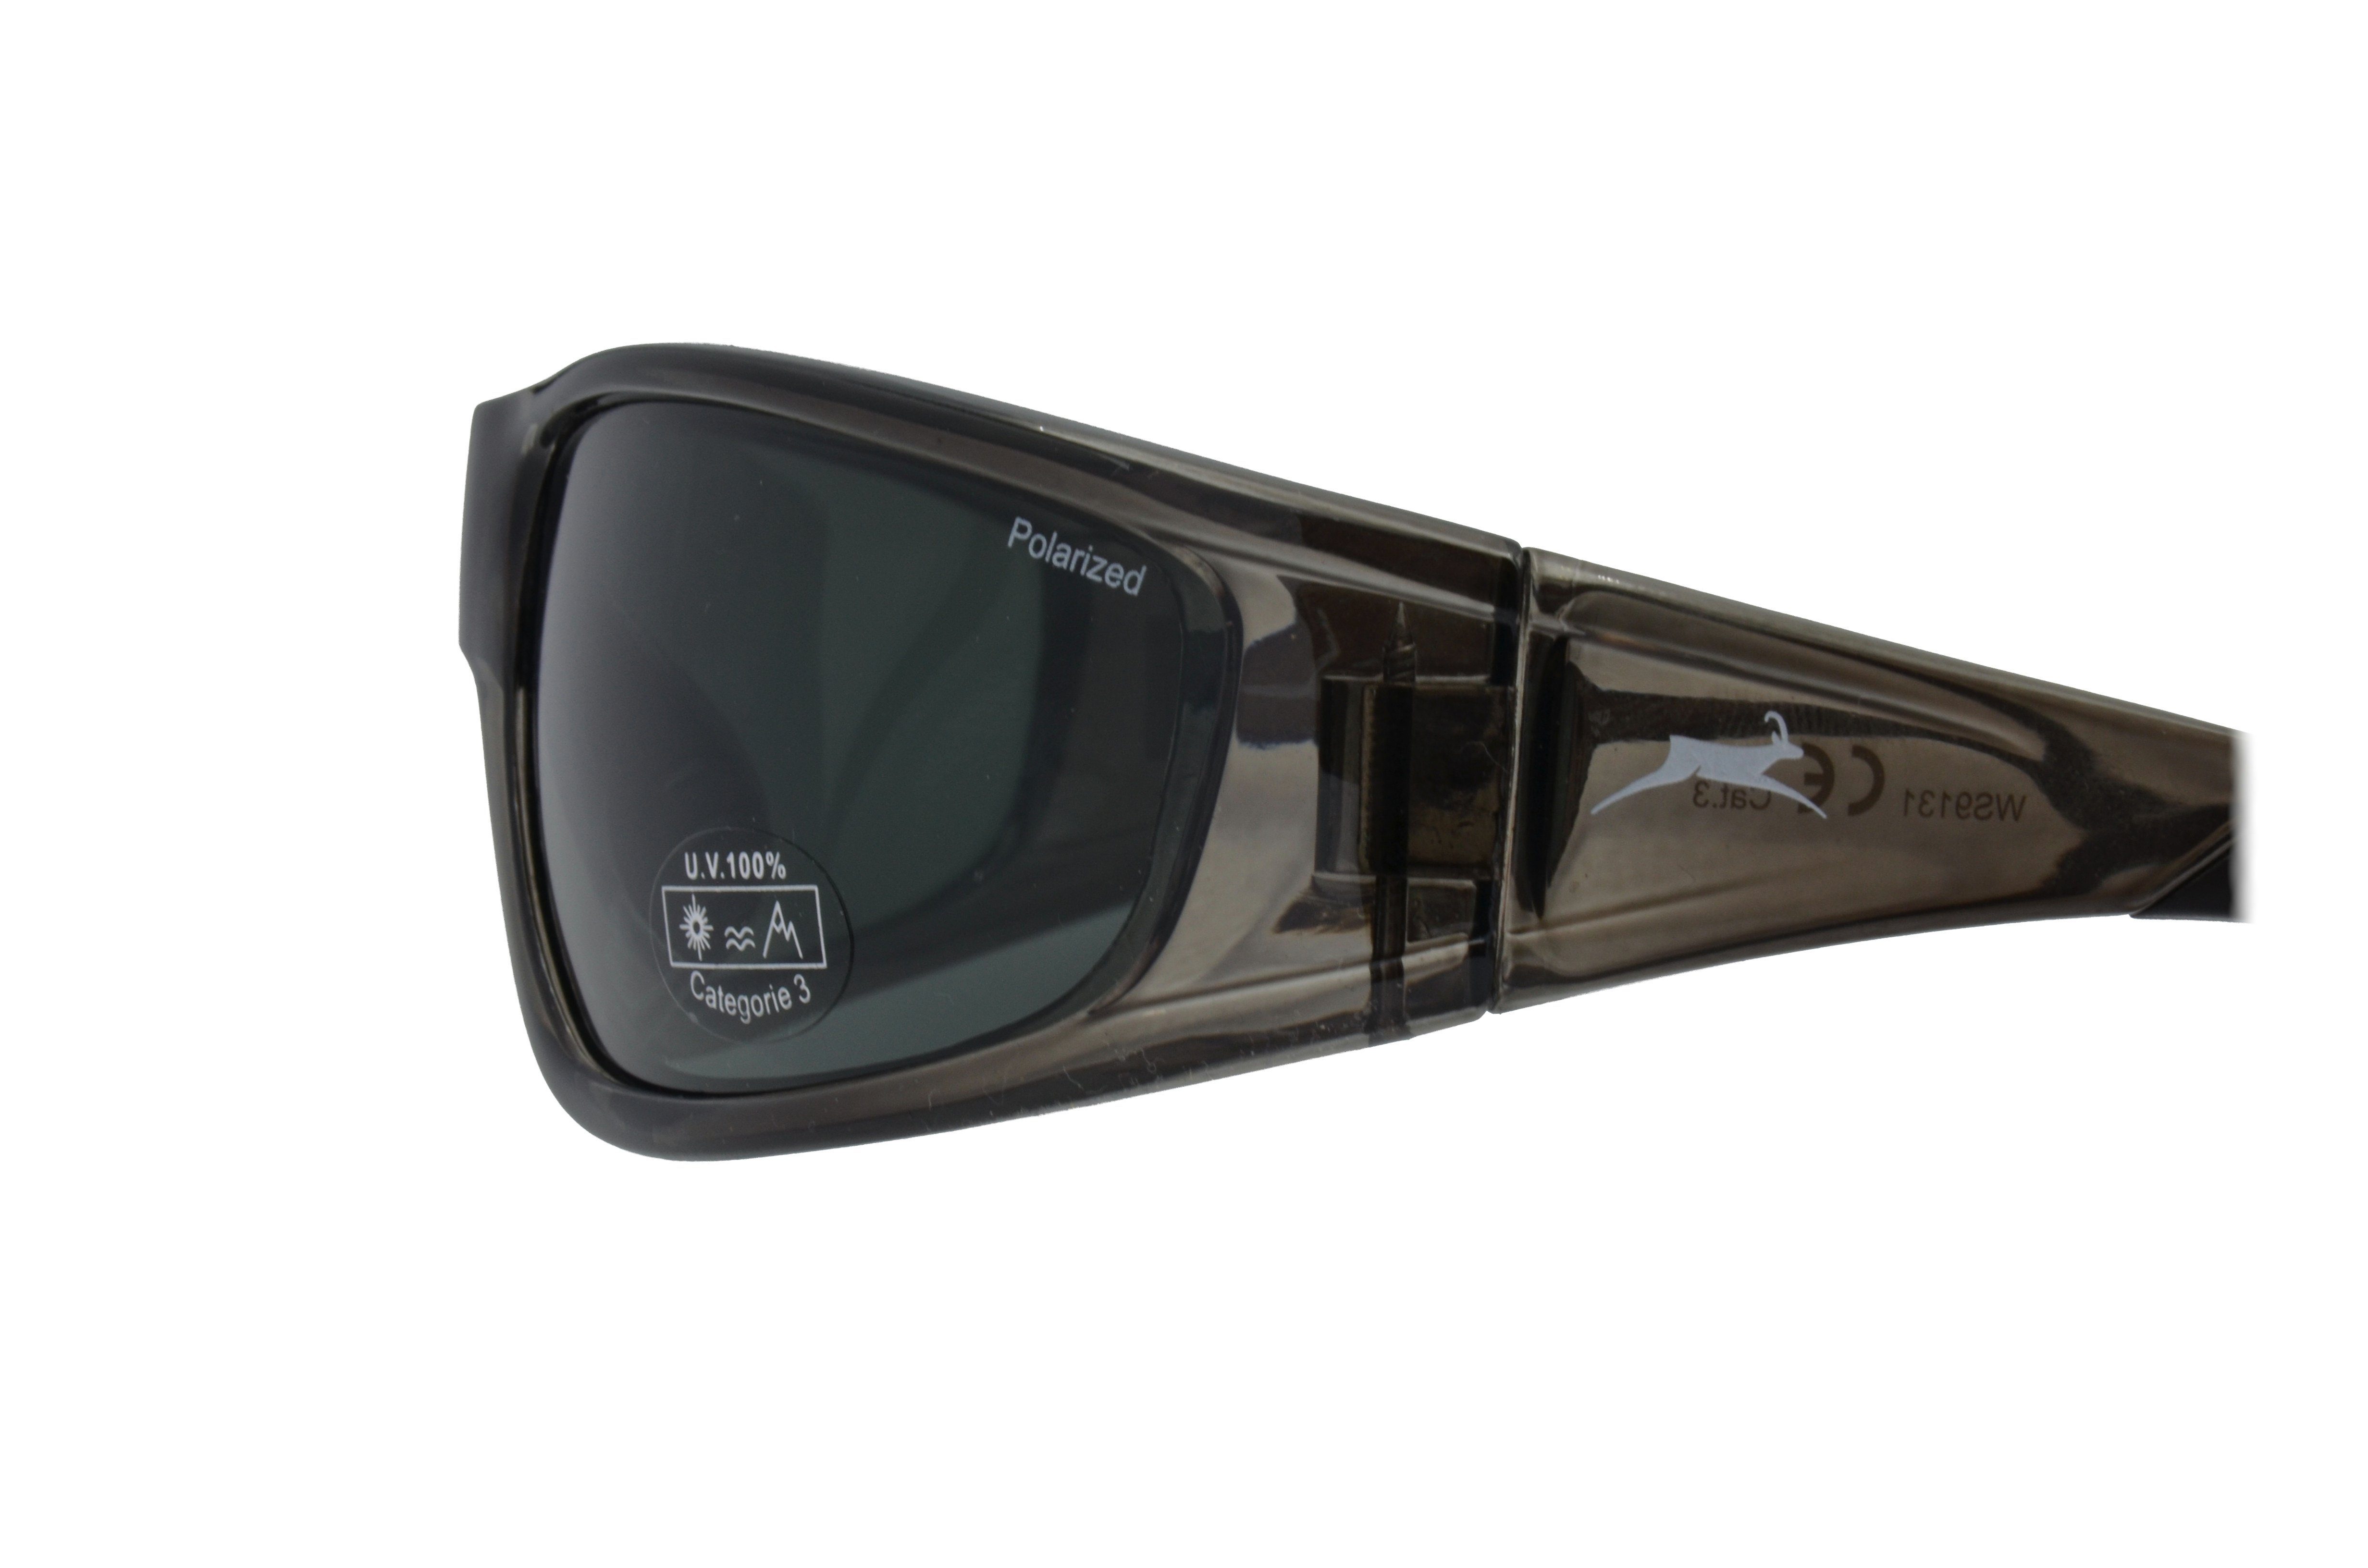 WS9131 Damen braun, Herren Skibrille Sportbrille polarisiert grau-transparent, Unisex, Gamswild Sonnenbrille Fahrradbrille